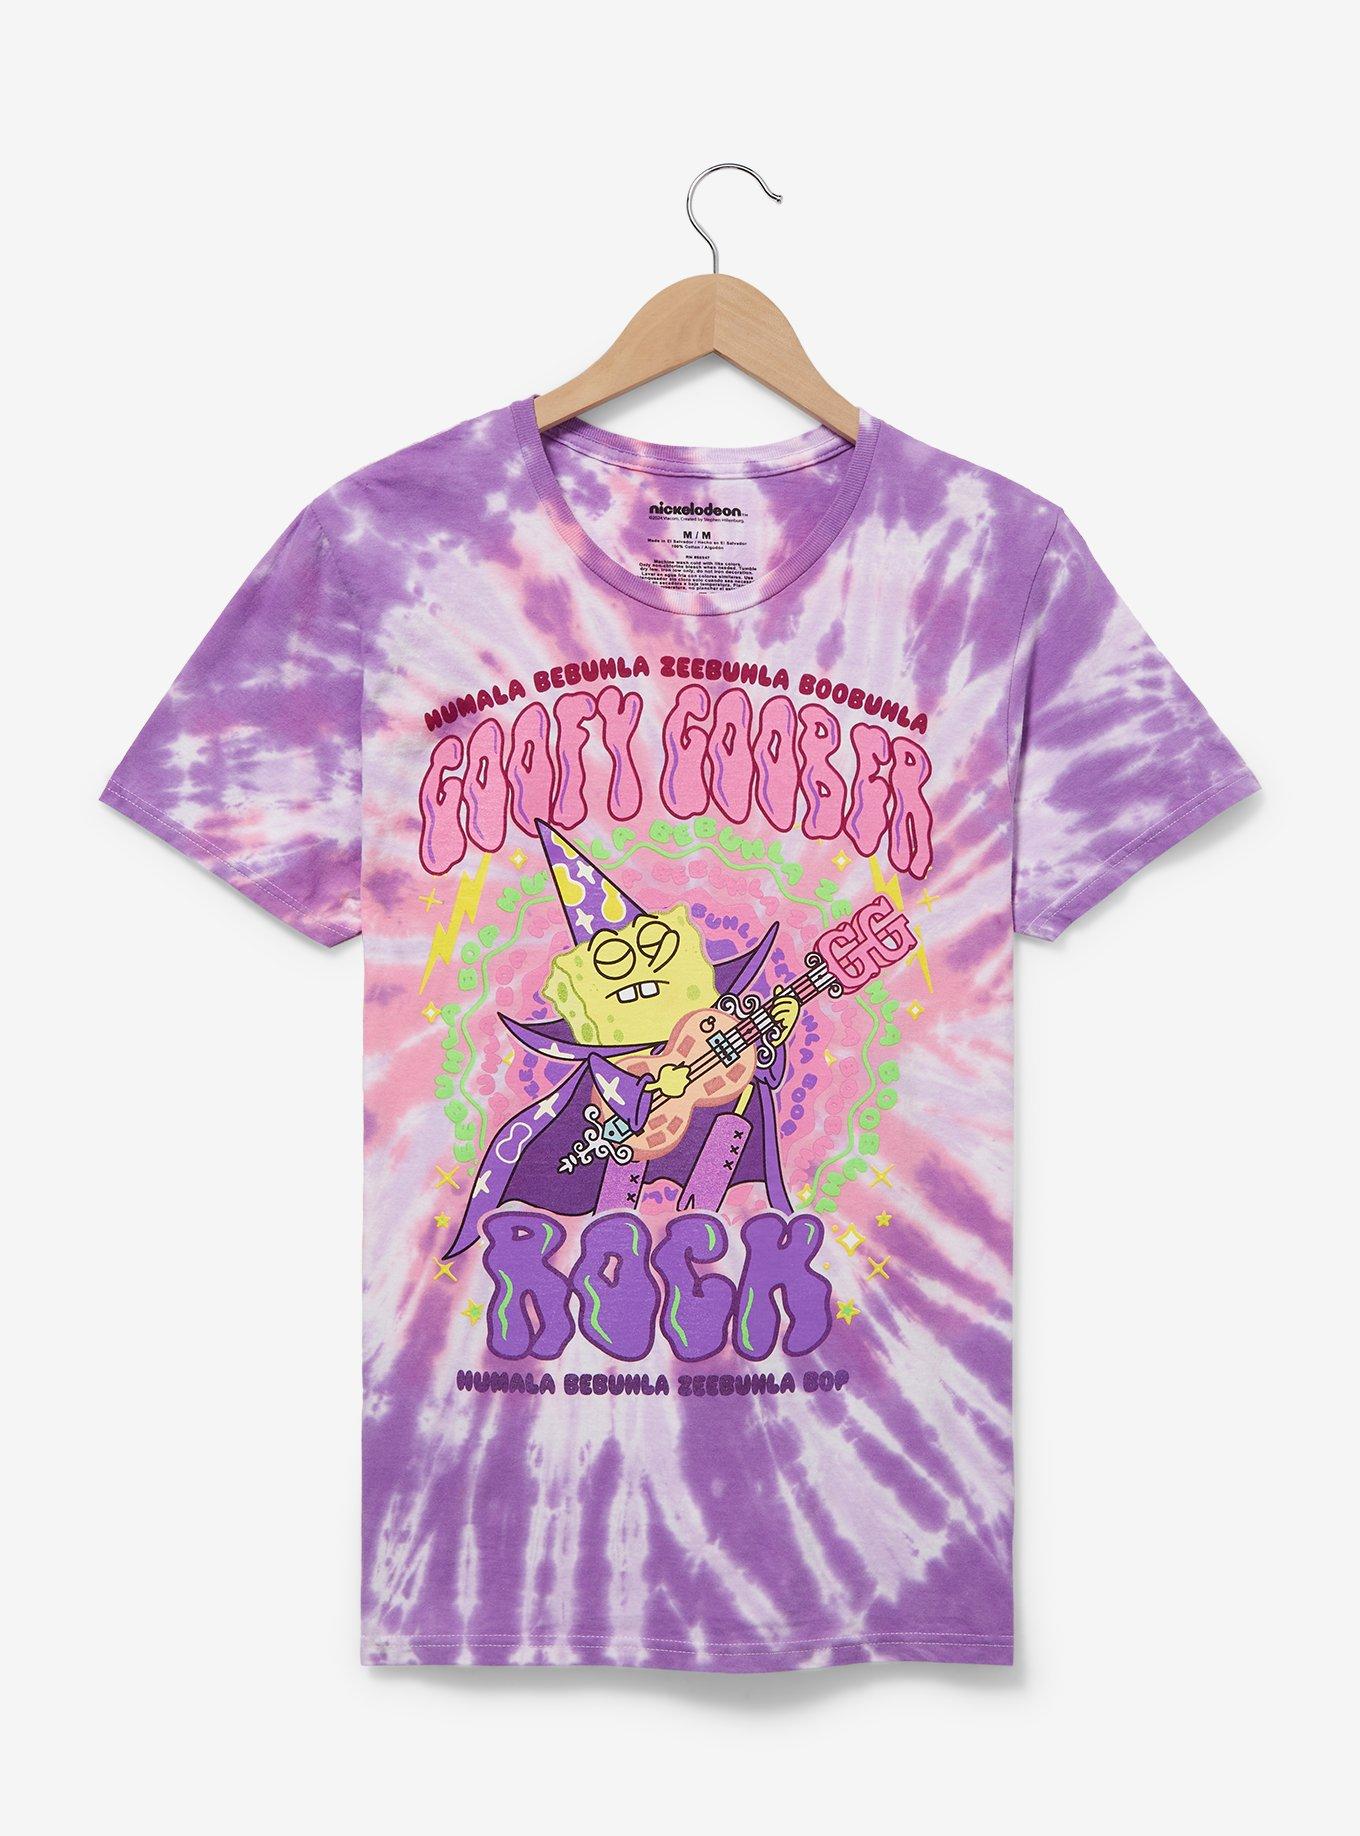 SpongeBob SquarePants Goofy Goober Tie-Dye Women's T-Shirt - BoxLunch Exclusive, , hi-res